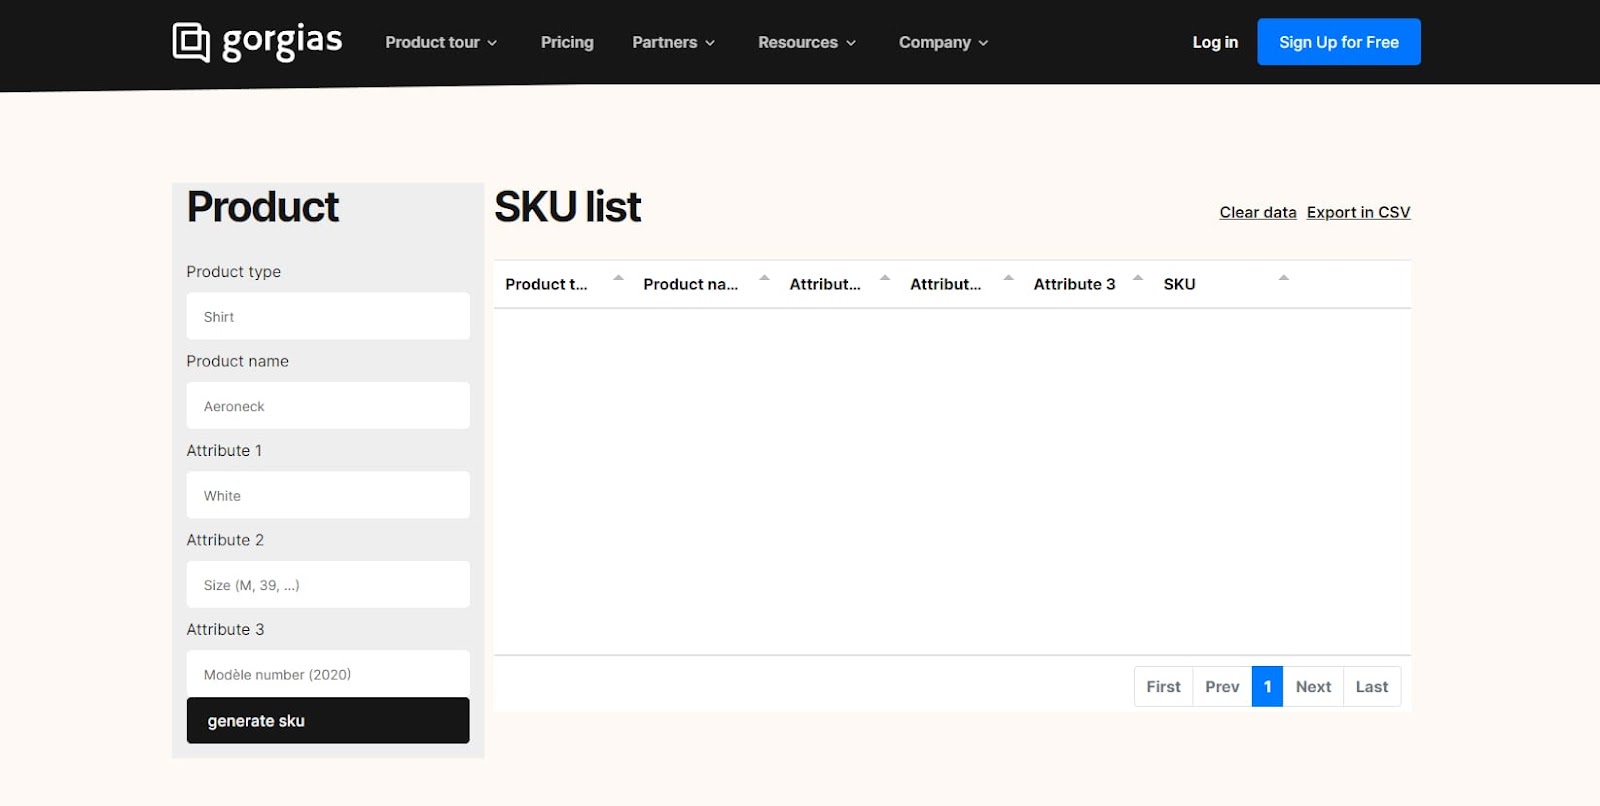 gorgias web based sku generator tool